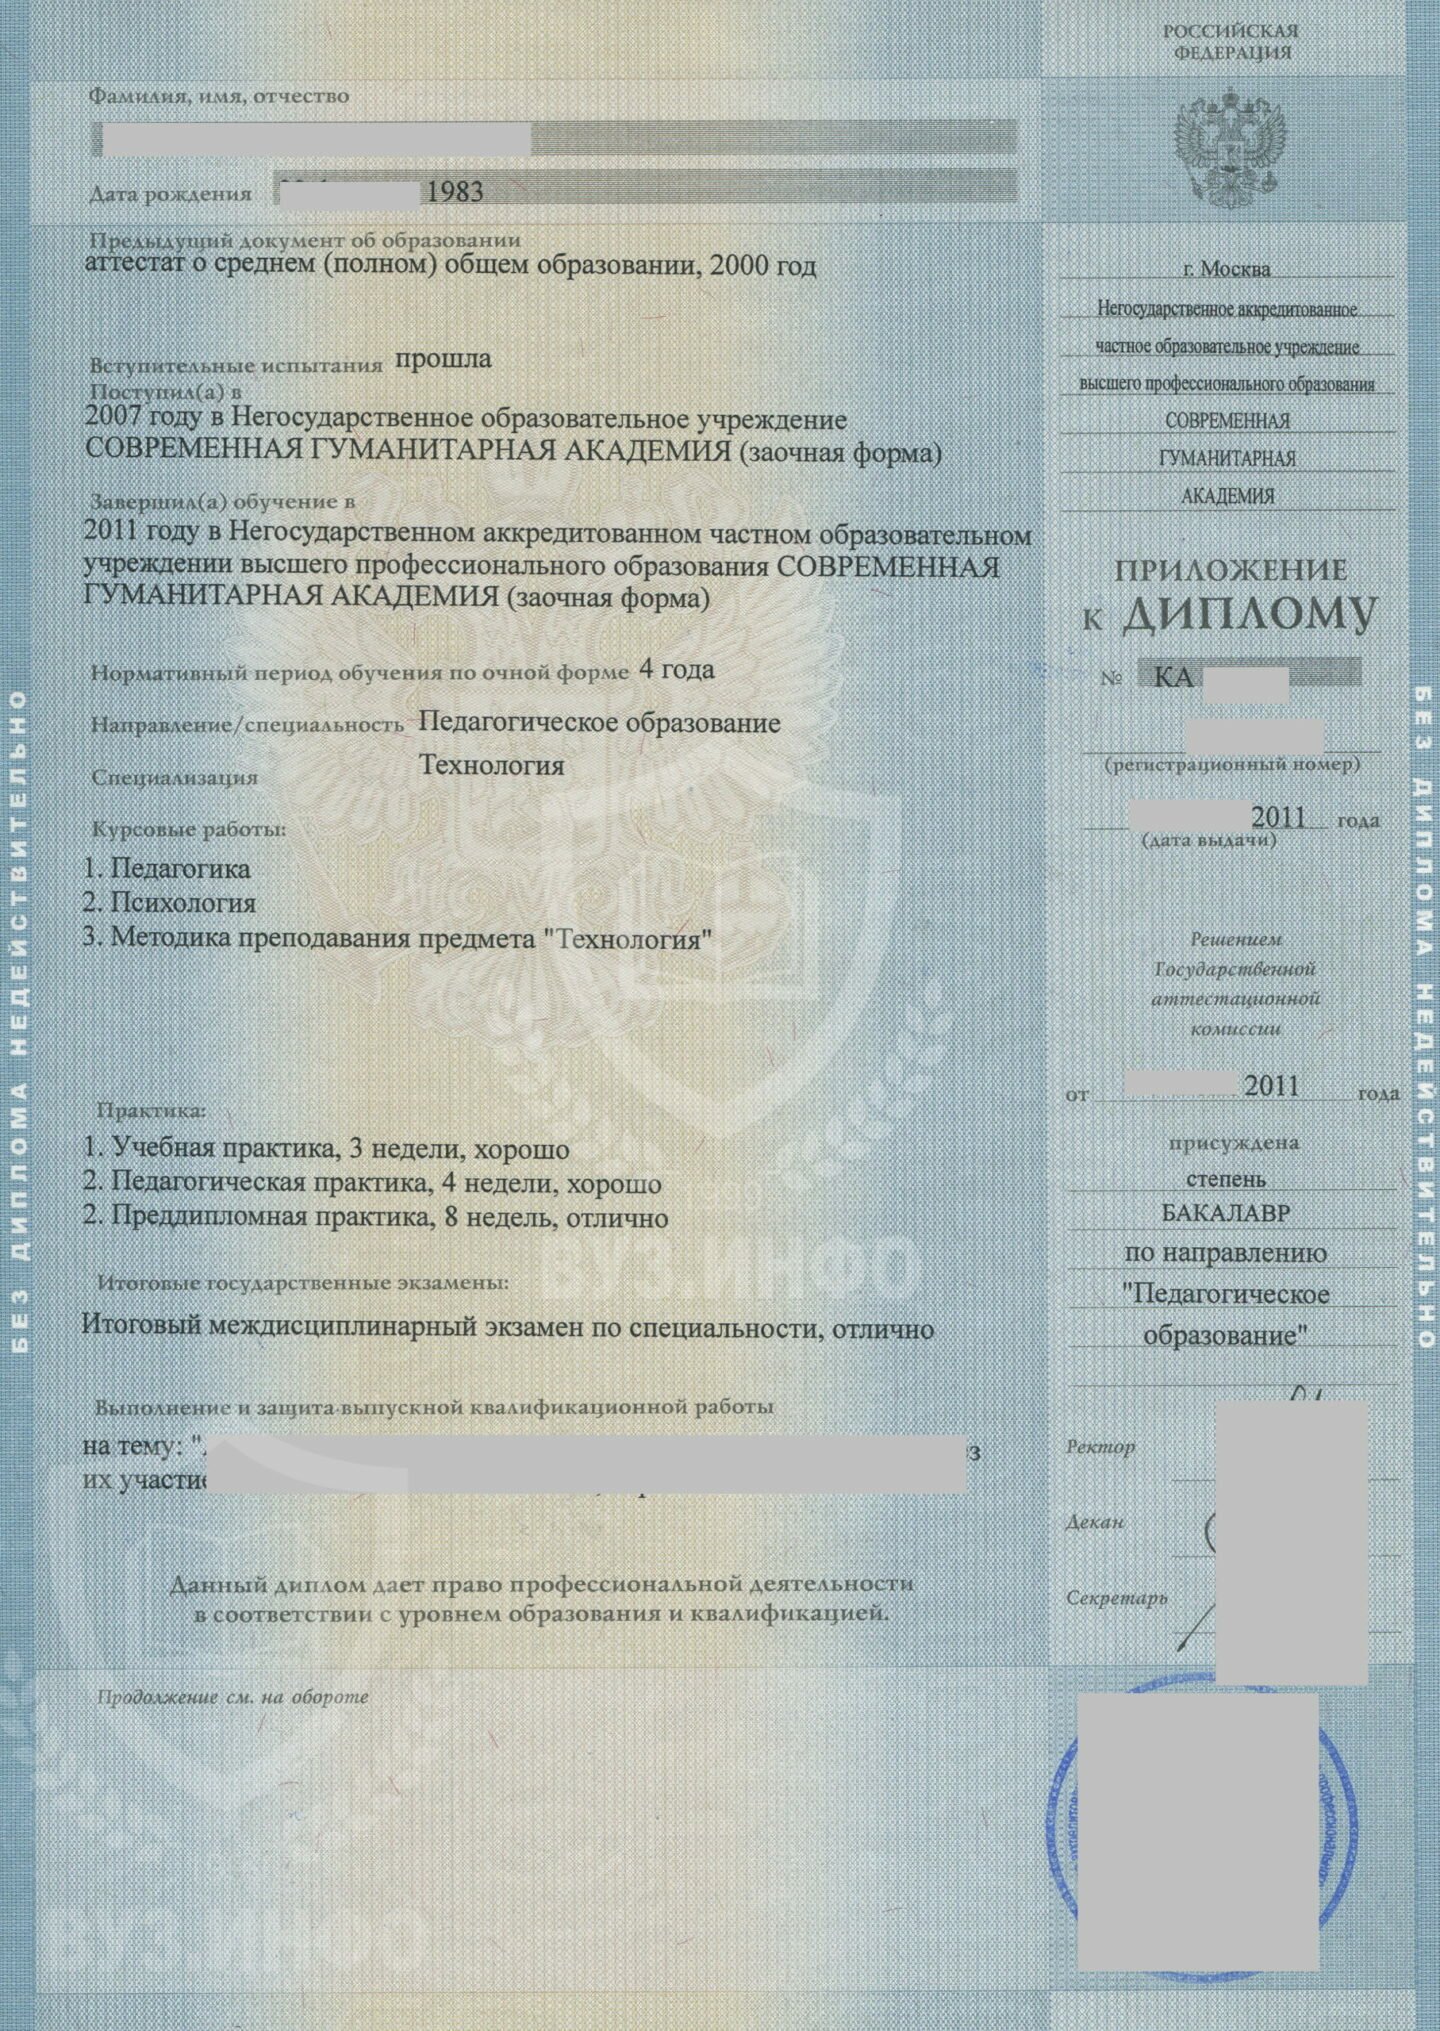 Приложение диплома бакалавра 2011 года по специальности Педагогическое образование, НОЧУ ВПО СГА